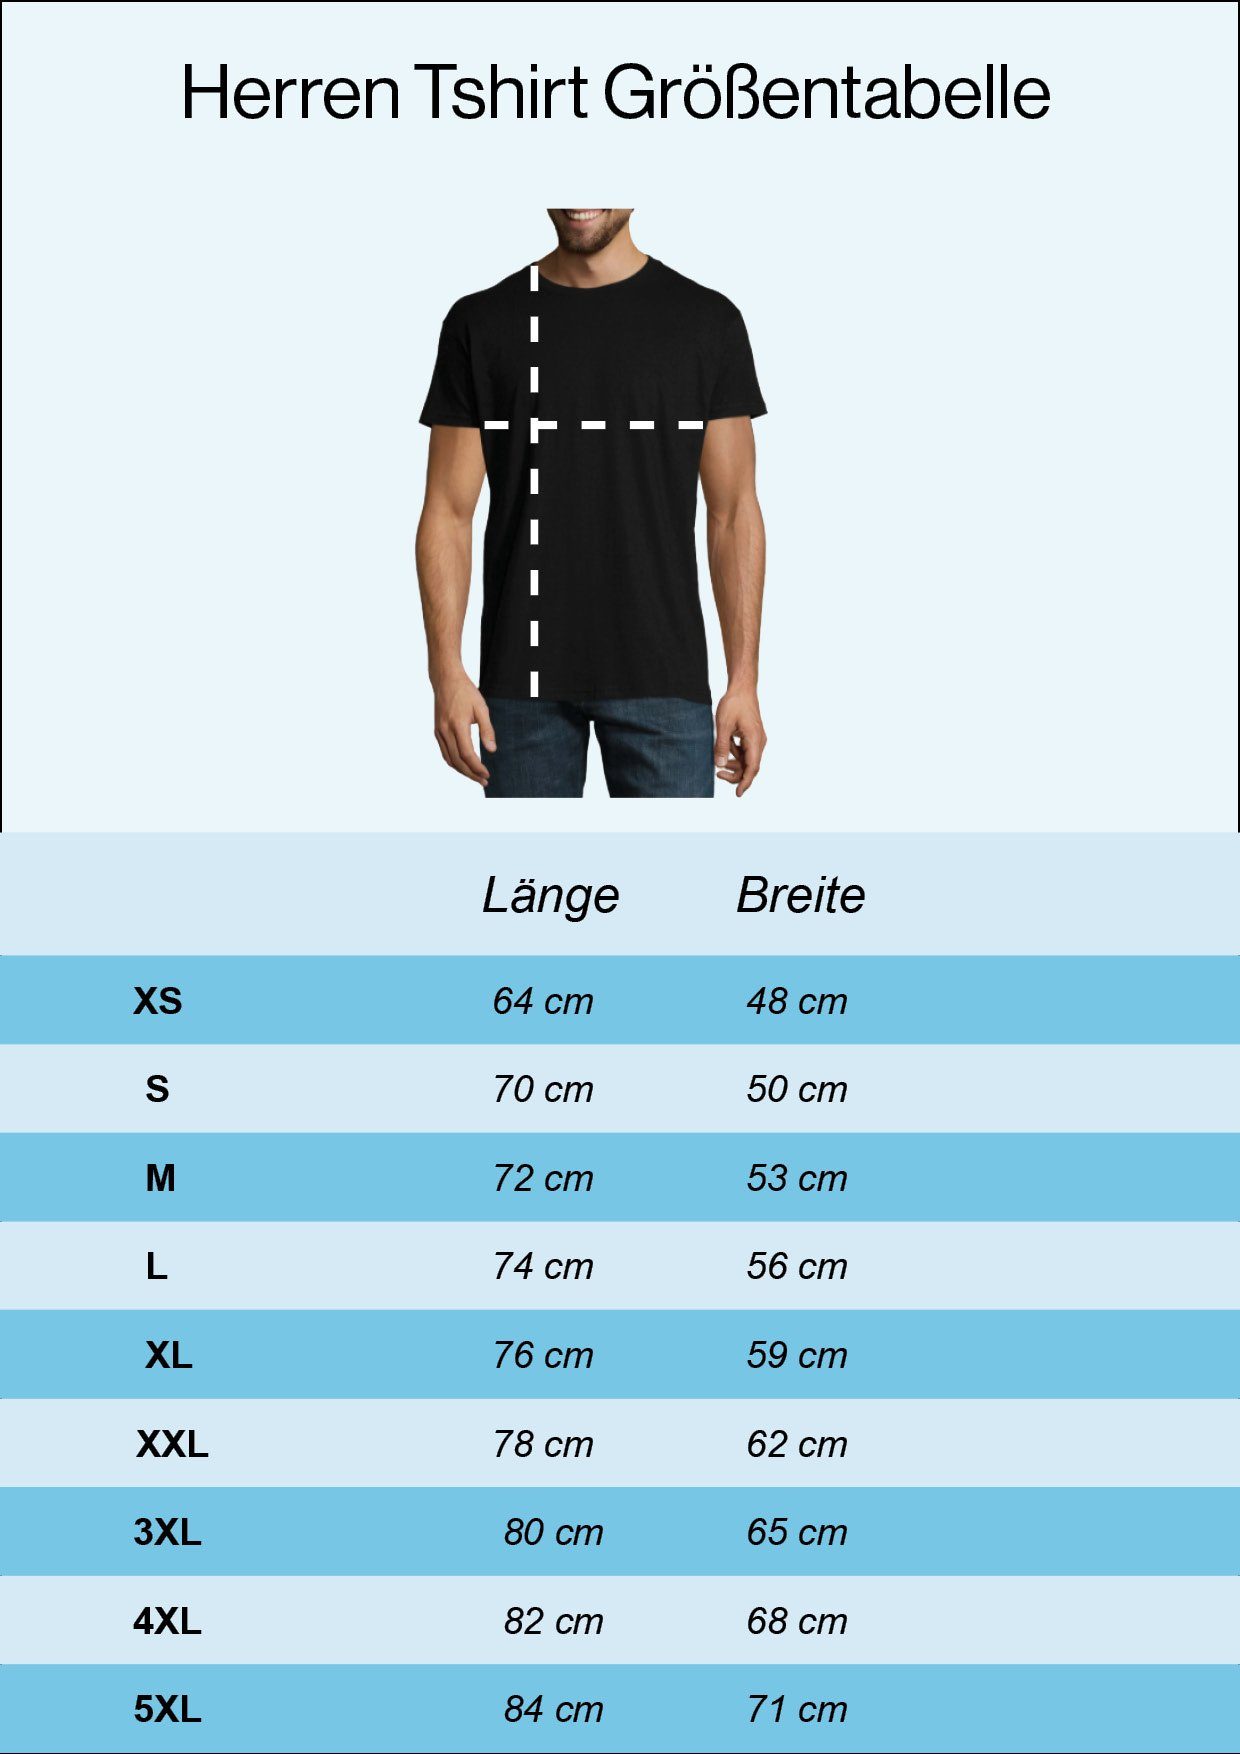 Shirt Herren mit Designz Frontprint trendigem Britain Navyblau England T-Shirt Youth